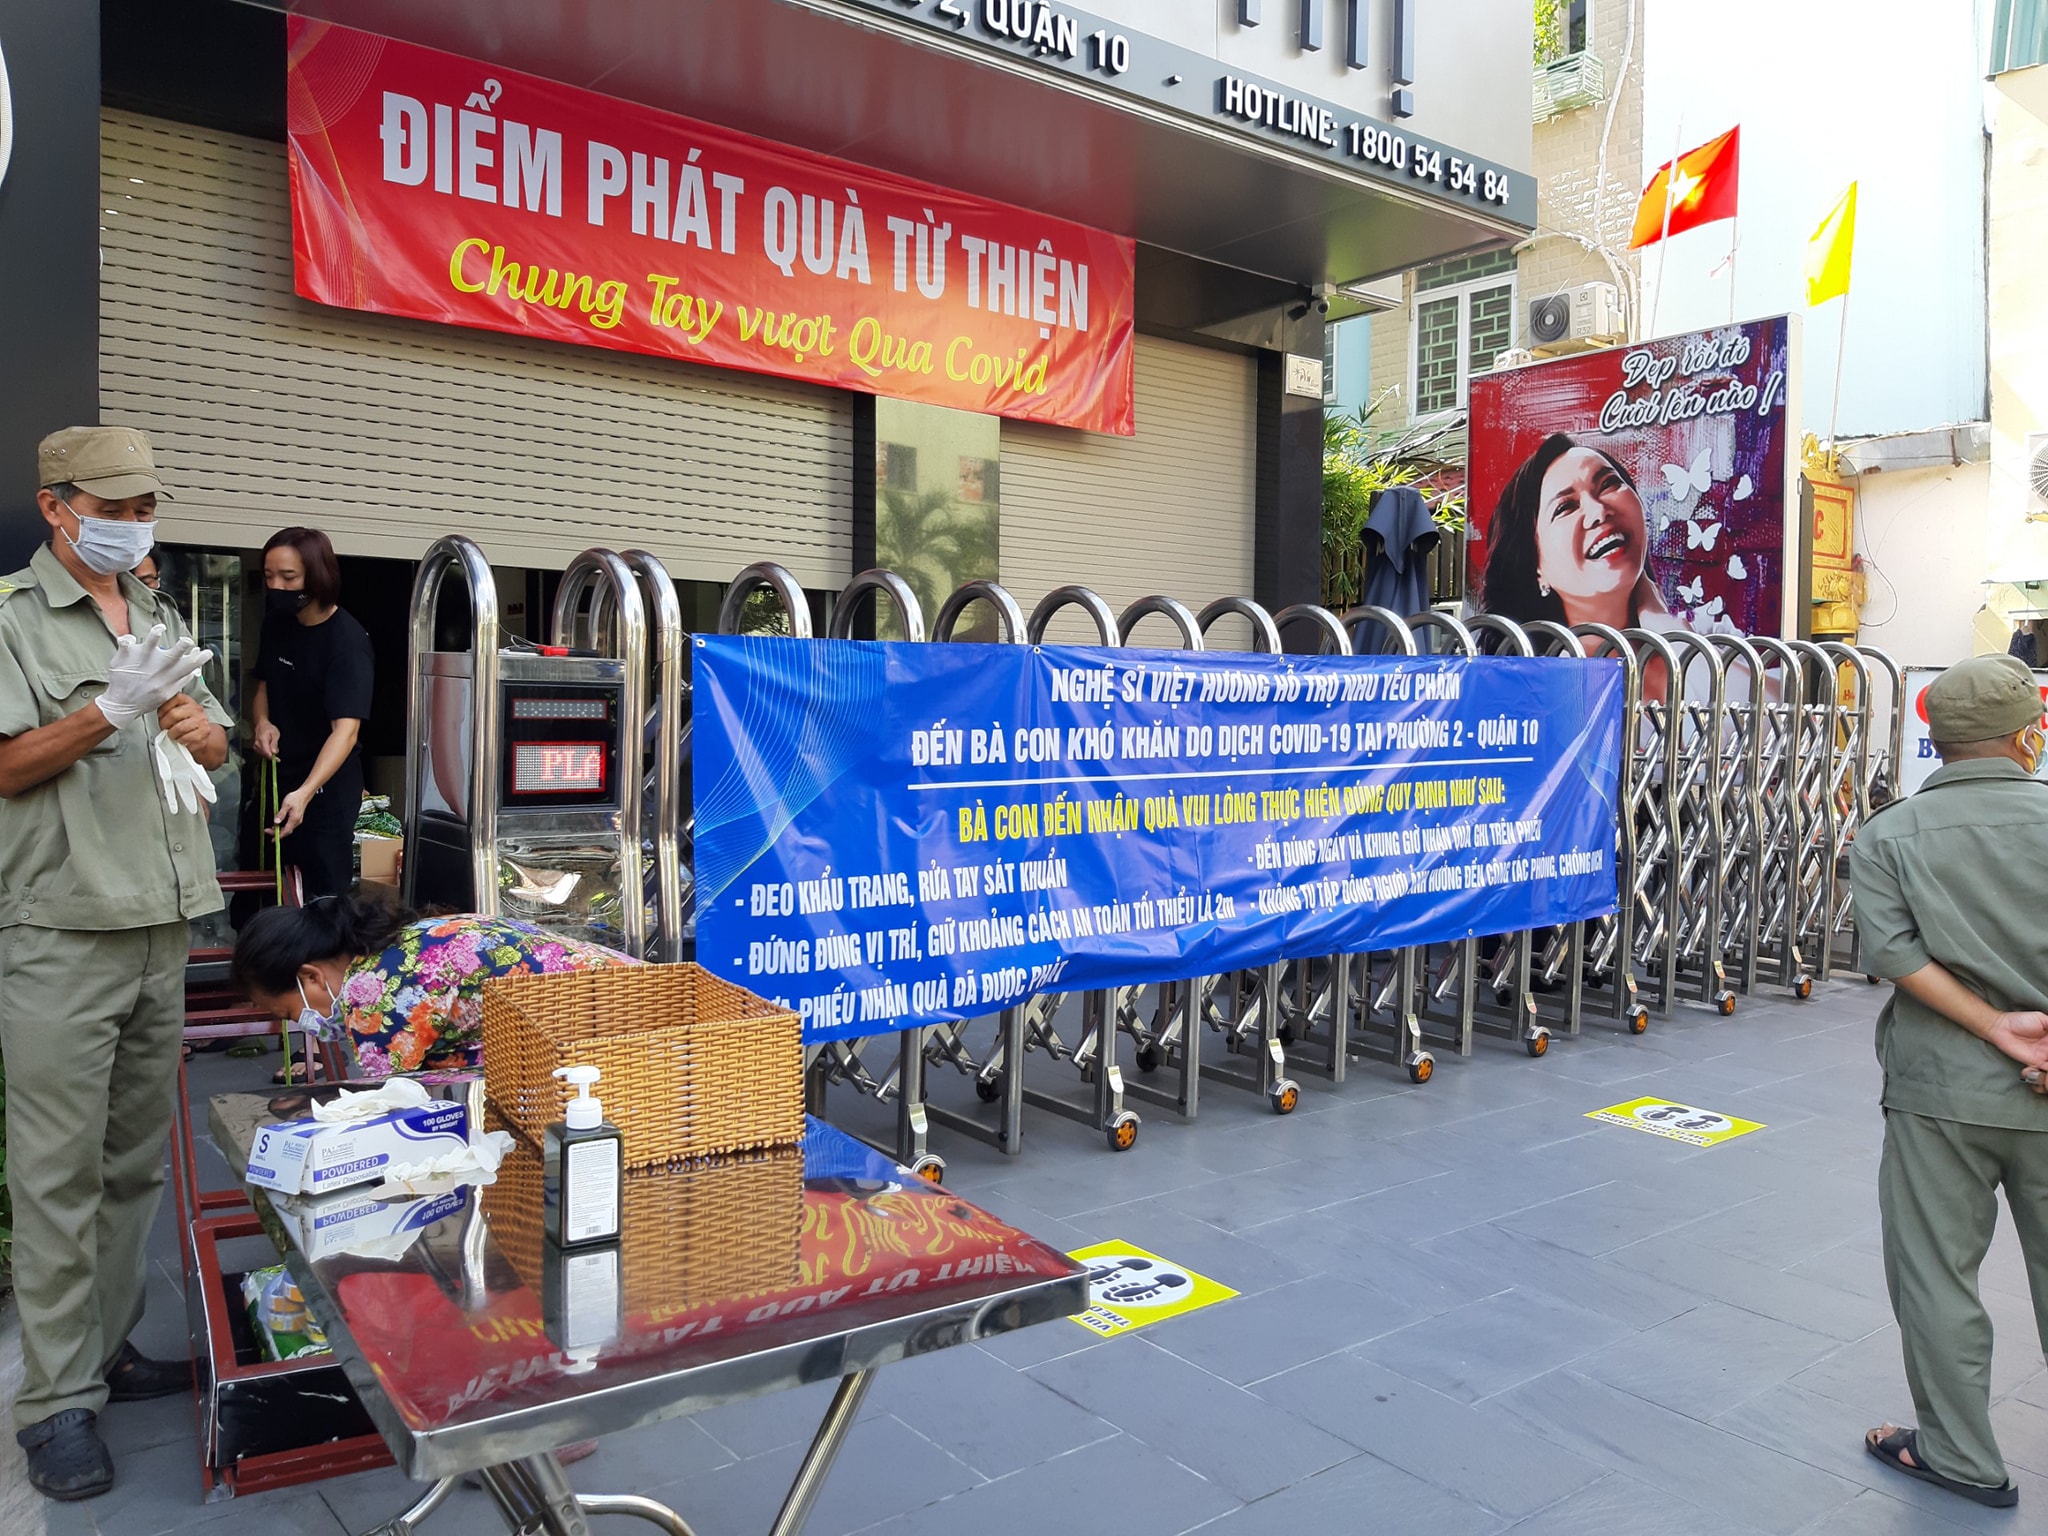 NS Việt Hương bức xúc khi bị tố ép người nhận quà từ thiện diễn thật thảm hại để chụp hình